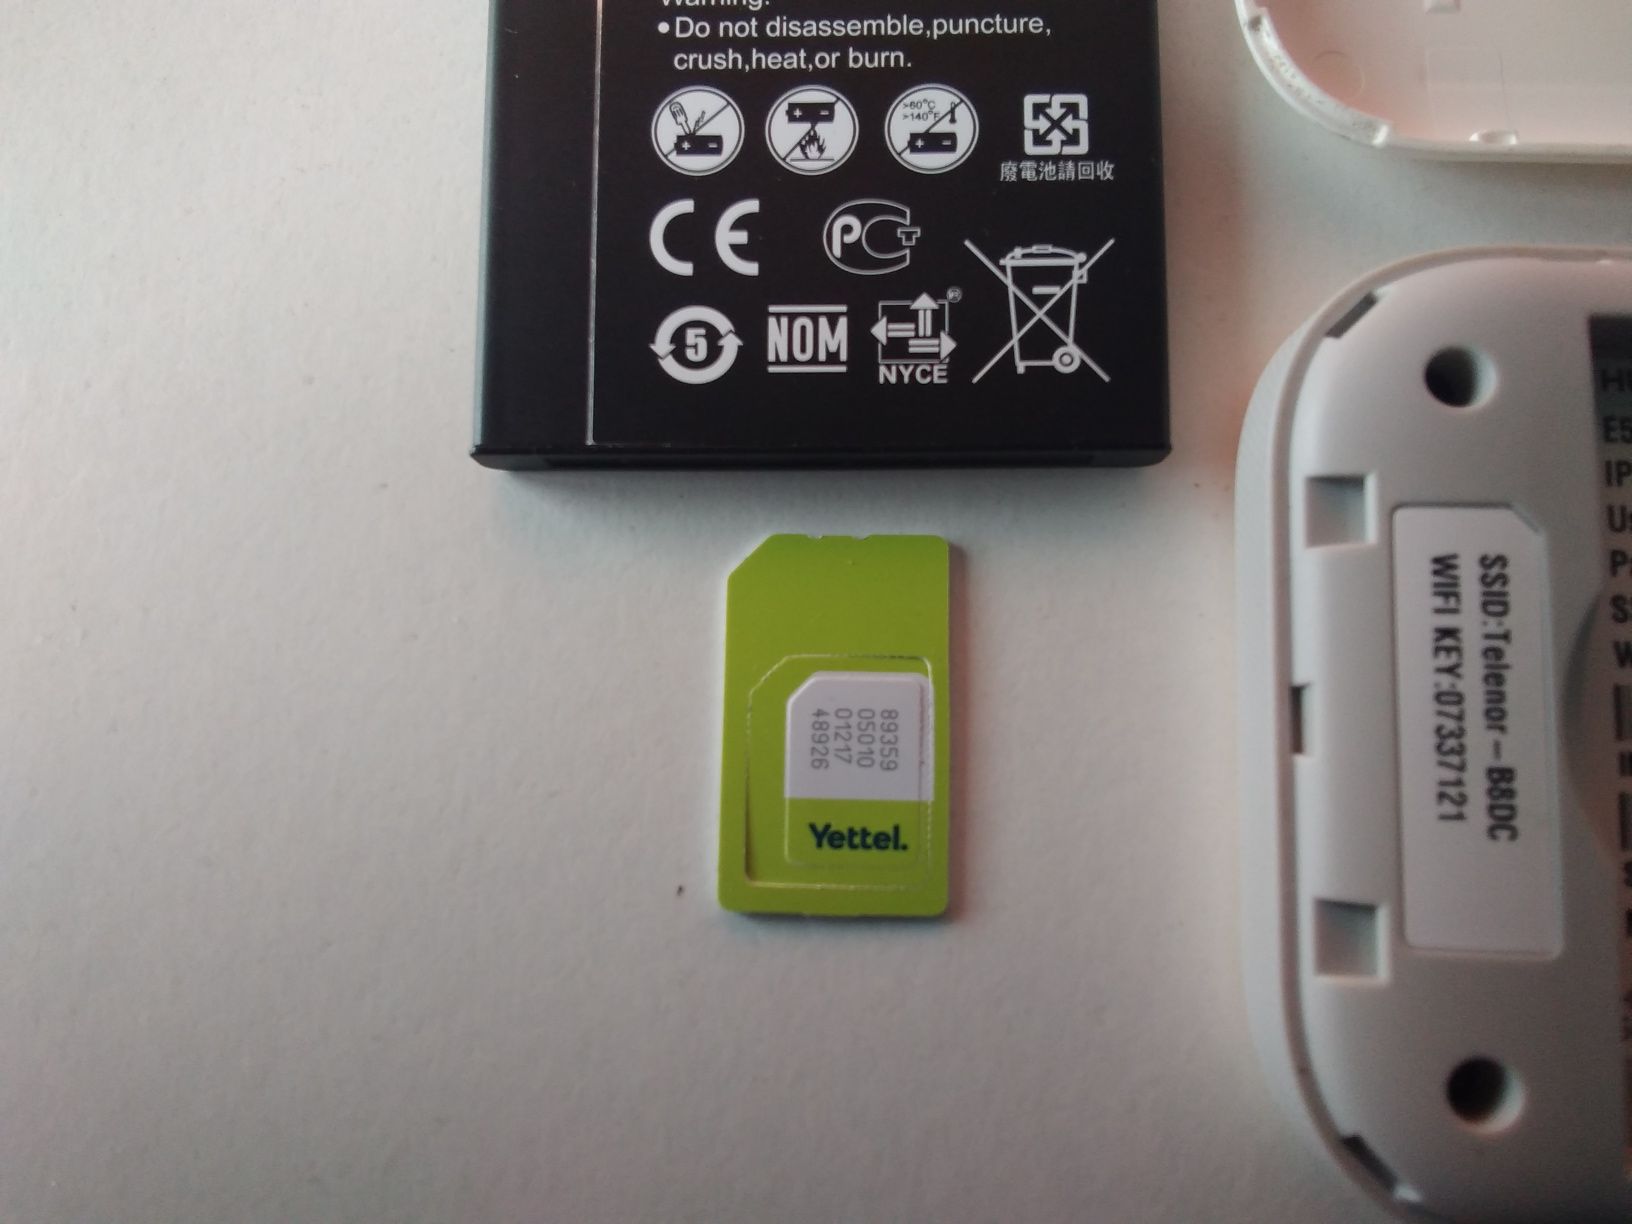 4G бисквитка- джобен рутер  на Yerel България за мобилен Интернет